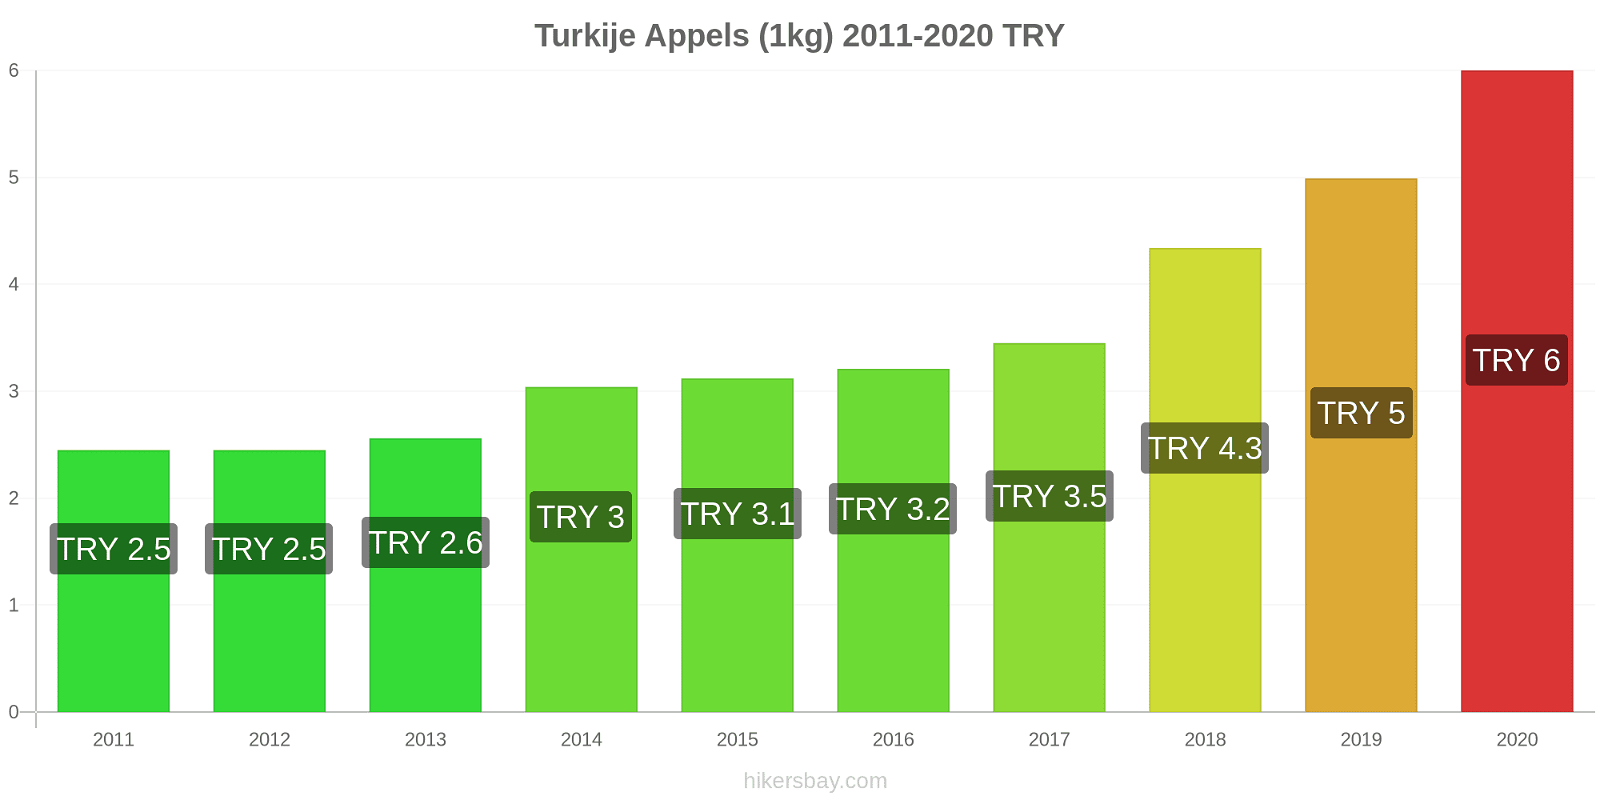 Turkije prijswijzigingen Appels (1kg) hikersbay.com